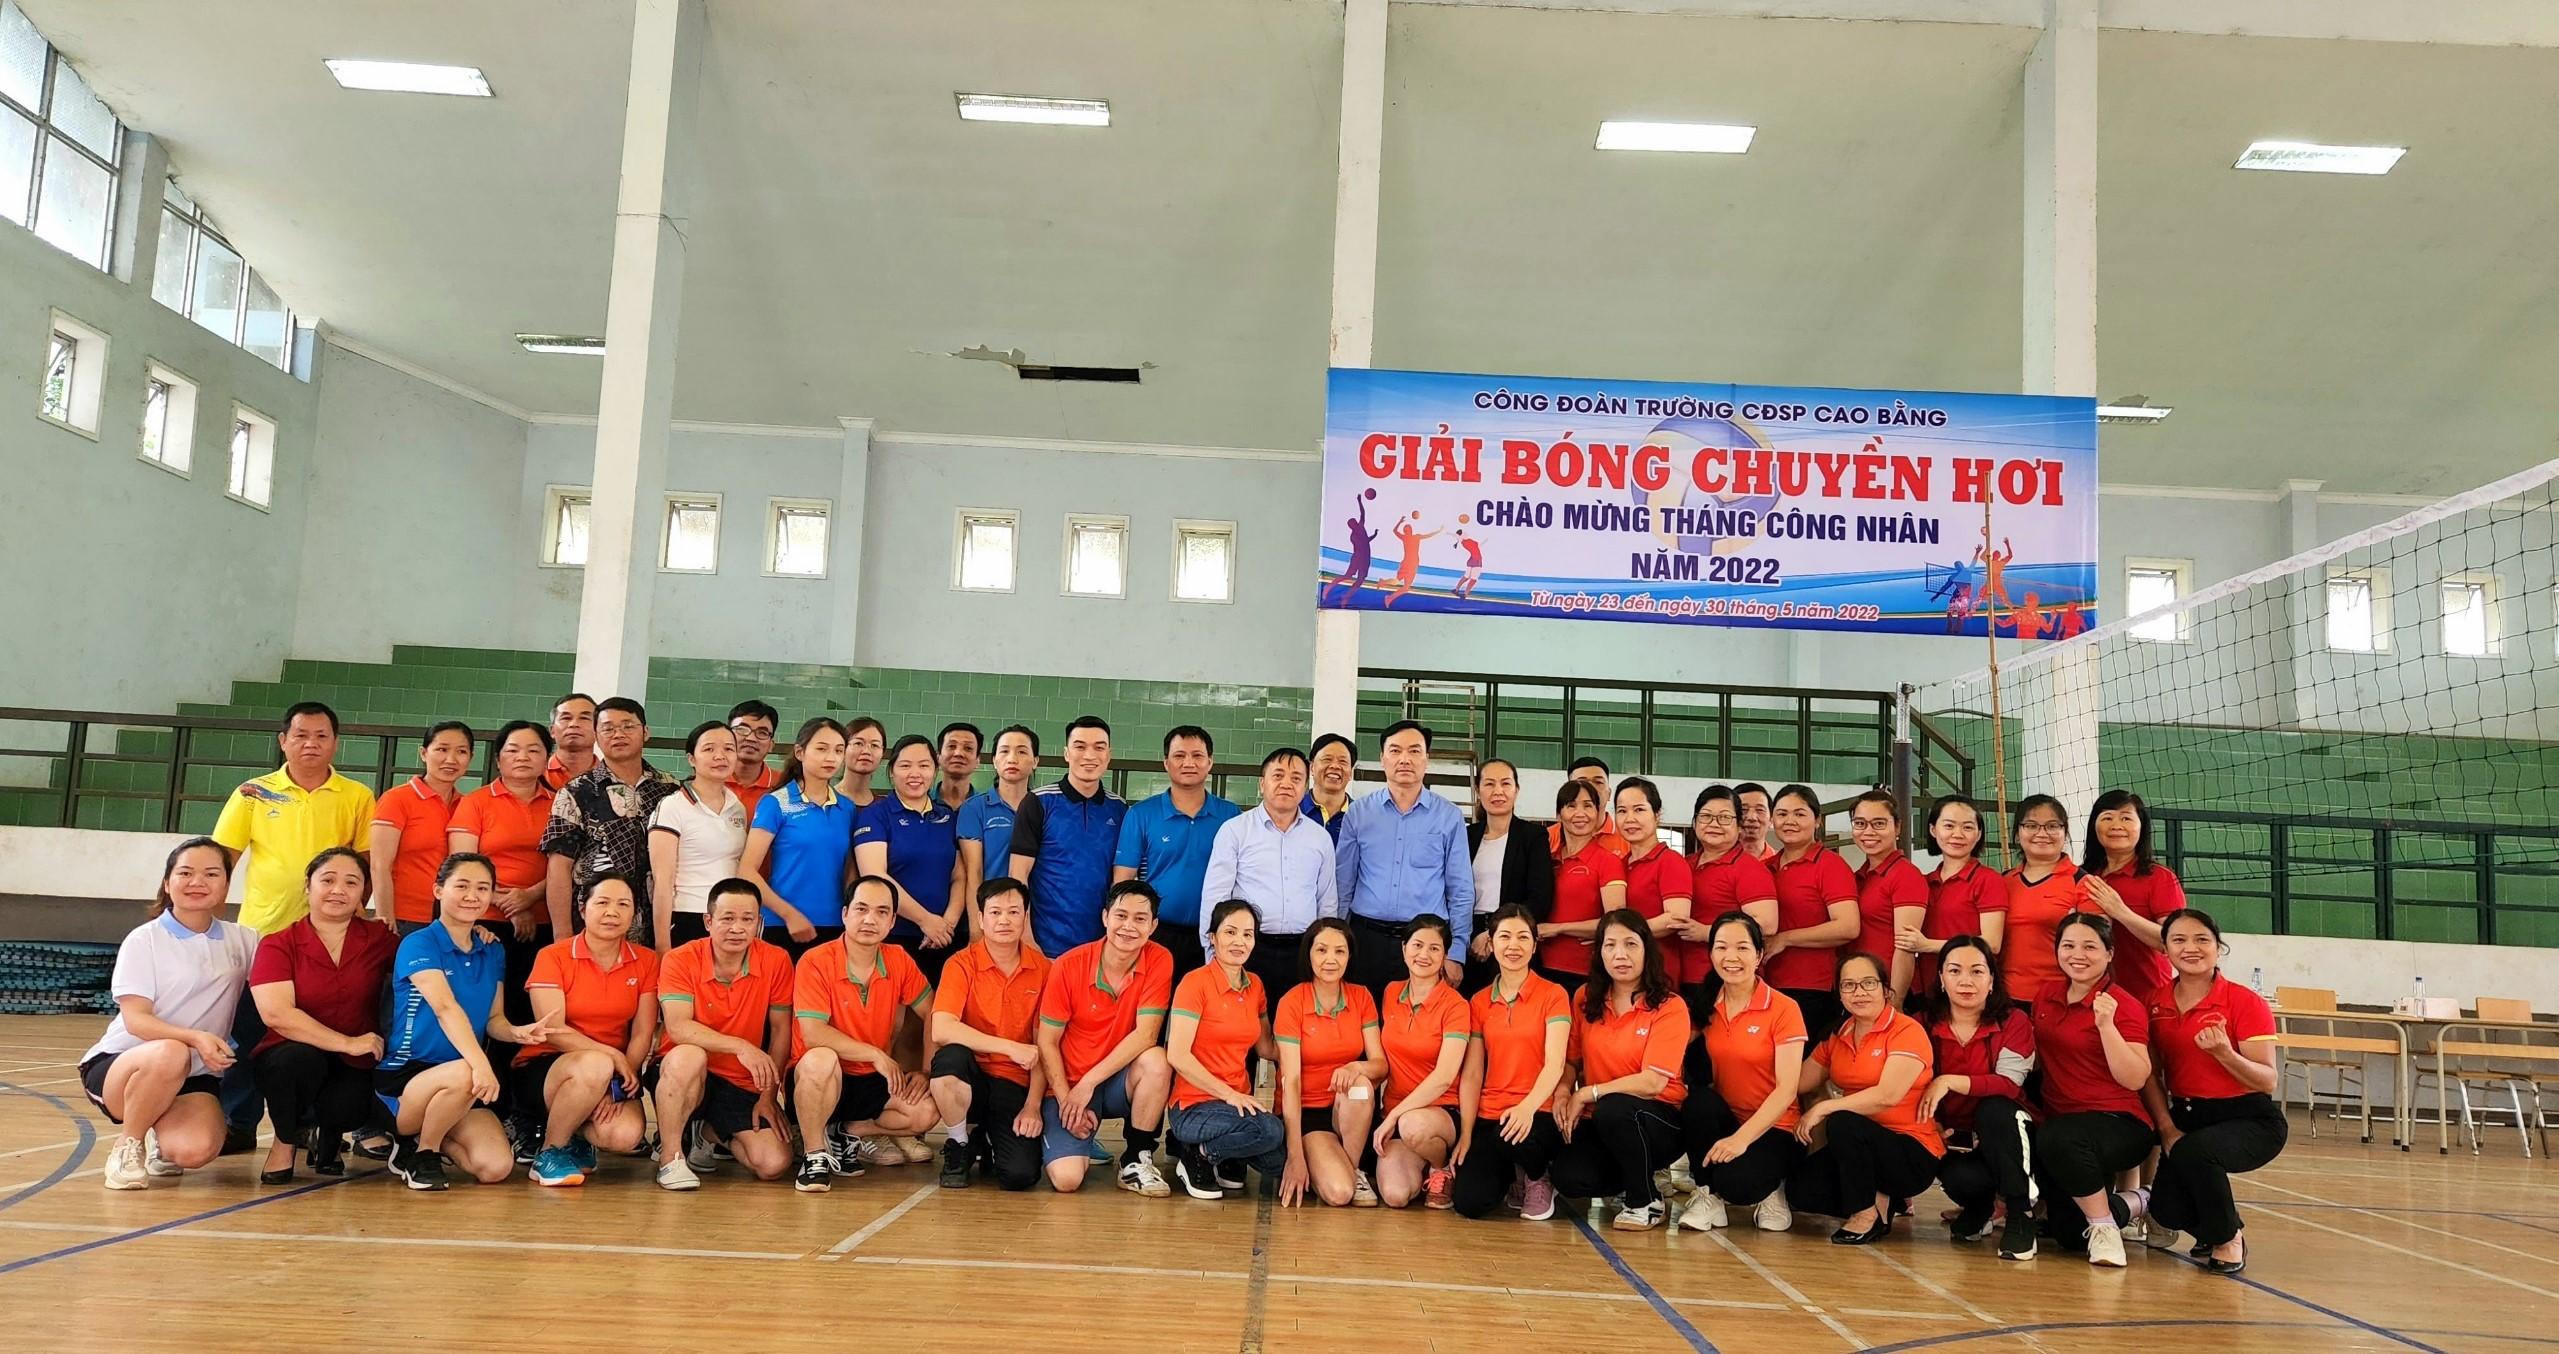 Công đoàn trường CĐSP Cao Bằng: Khai mạc Giải bóng chuyền hơi  chào mừng Tháng Công nhân năm 2022